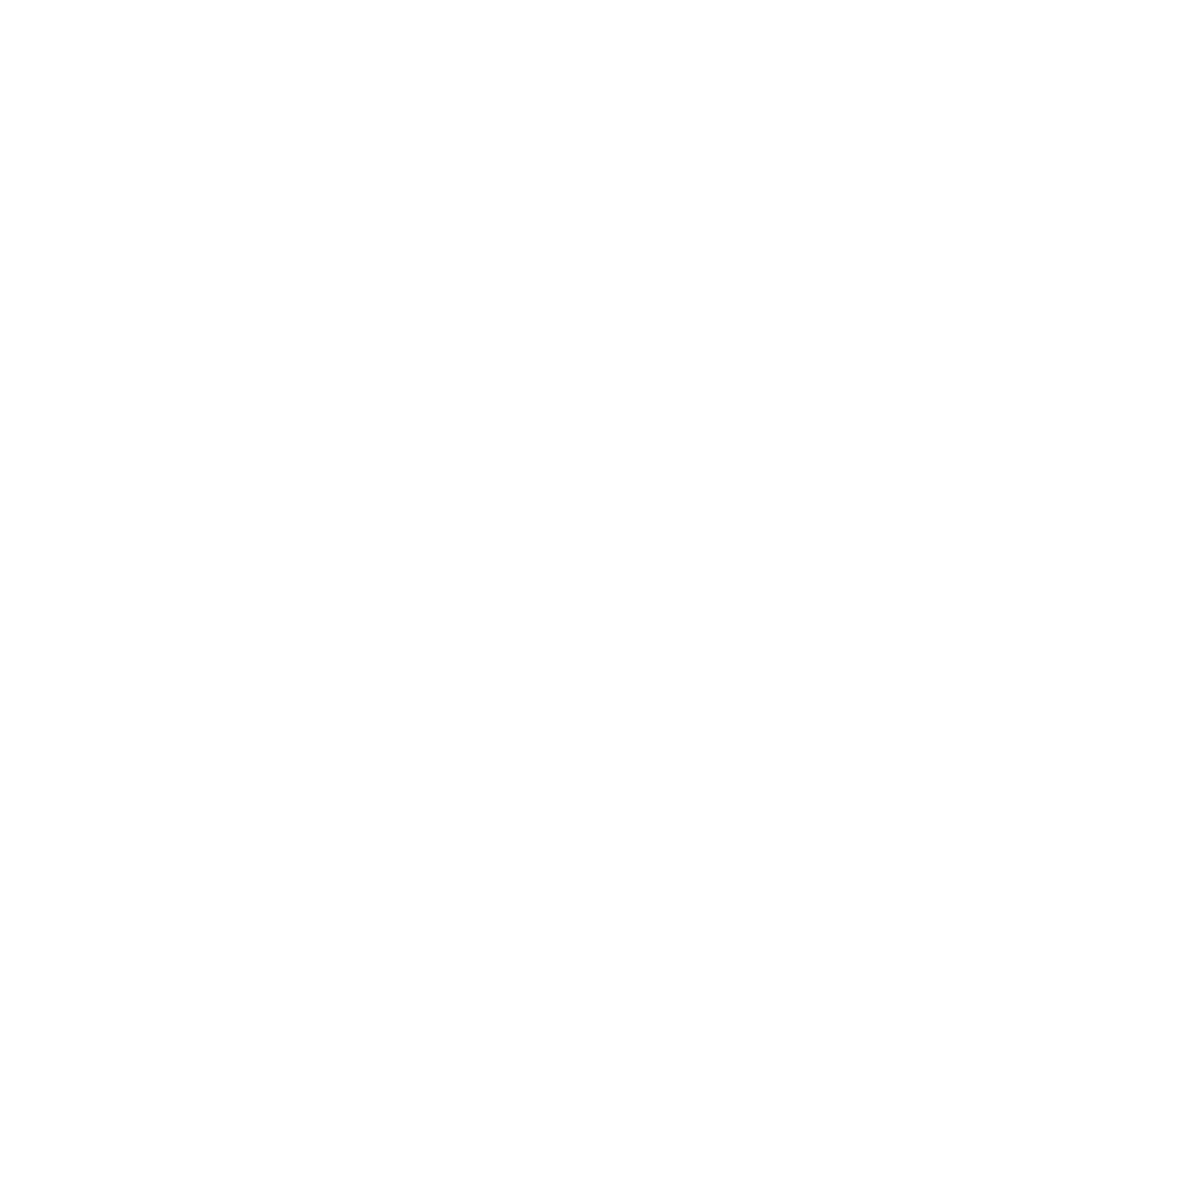 Icono de persona sentada dentro de un cuadrado